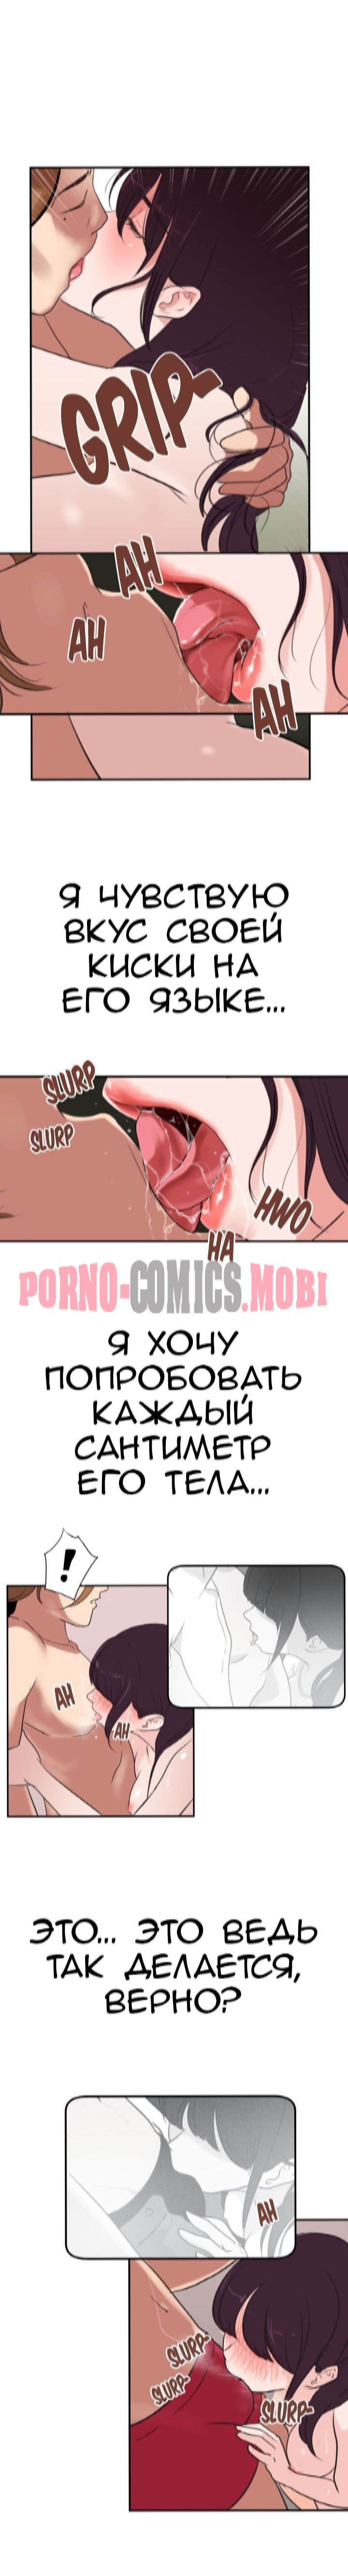 Порно Комикс Молниеотвод Часть 1-2 смотреть бесплатно онлайн